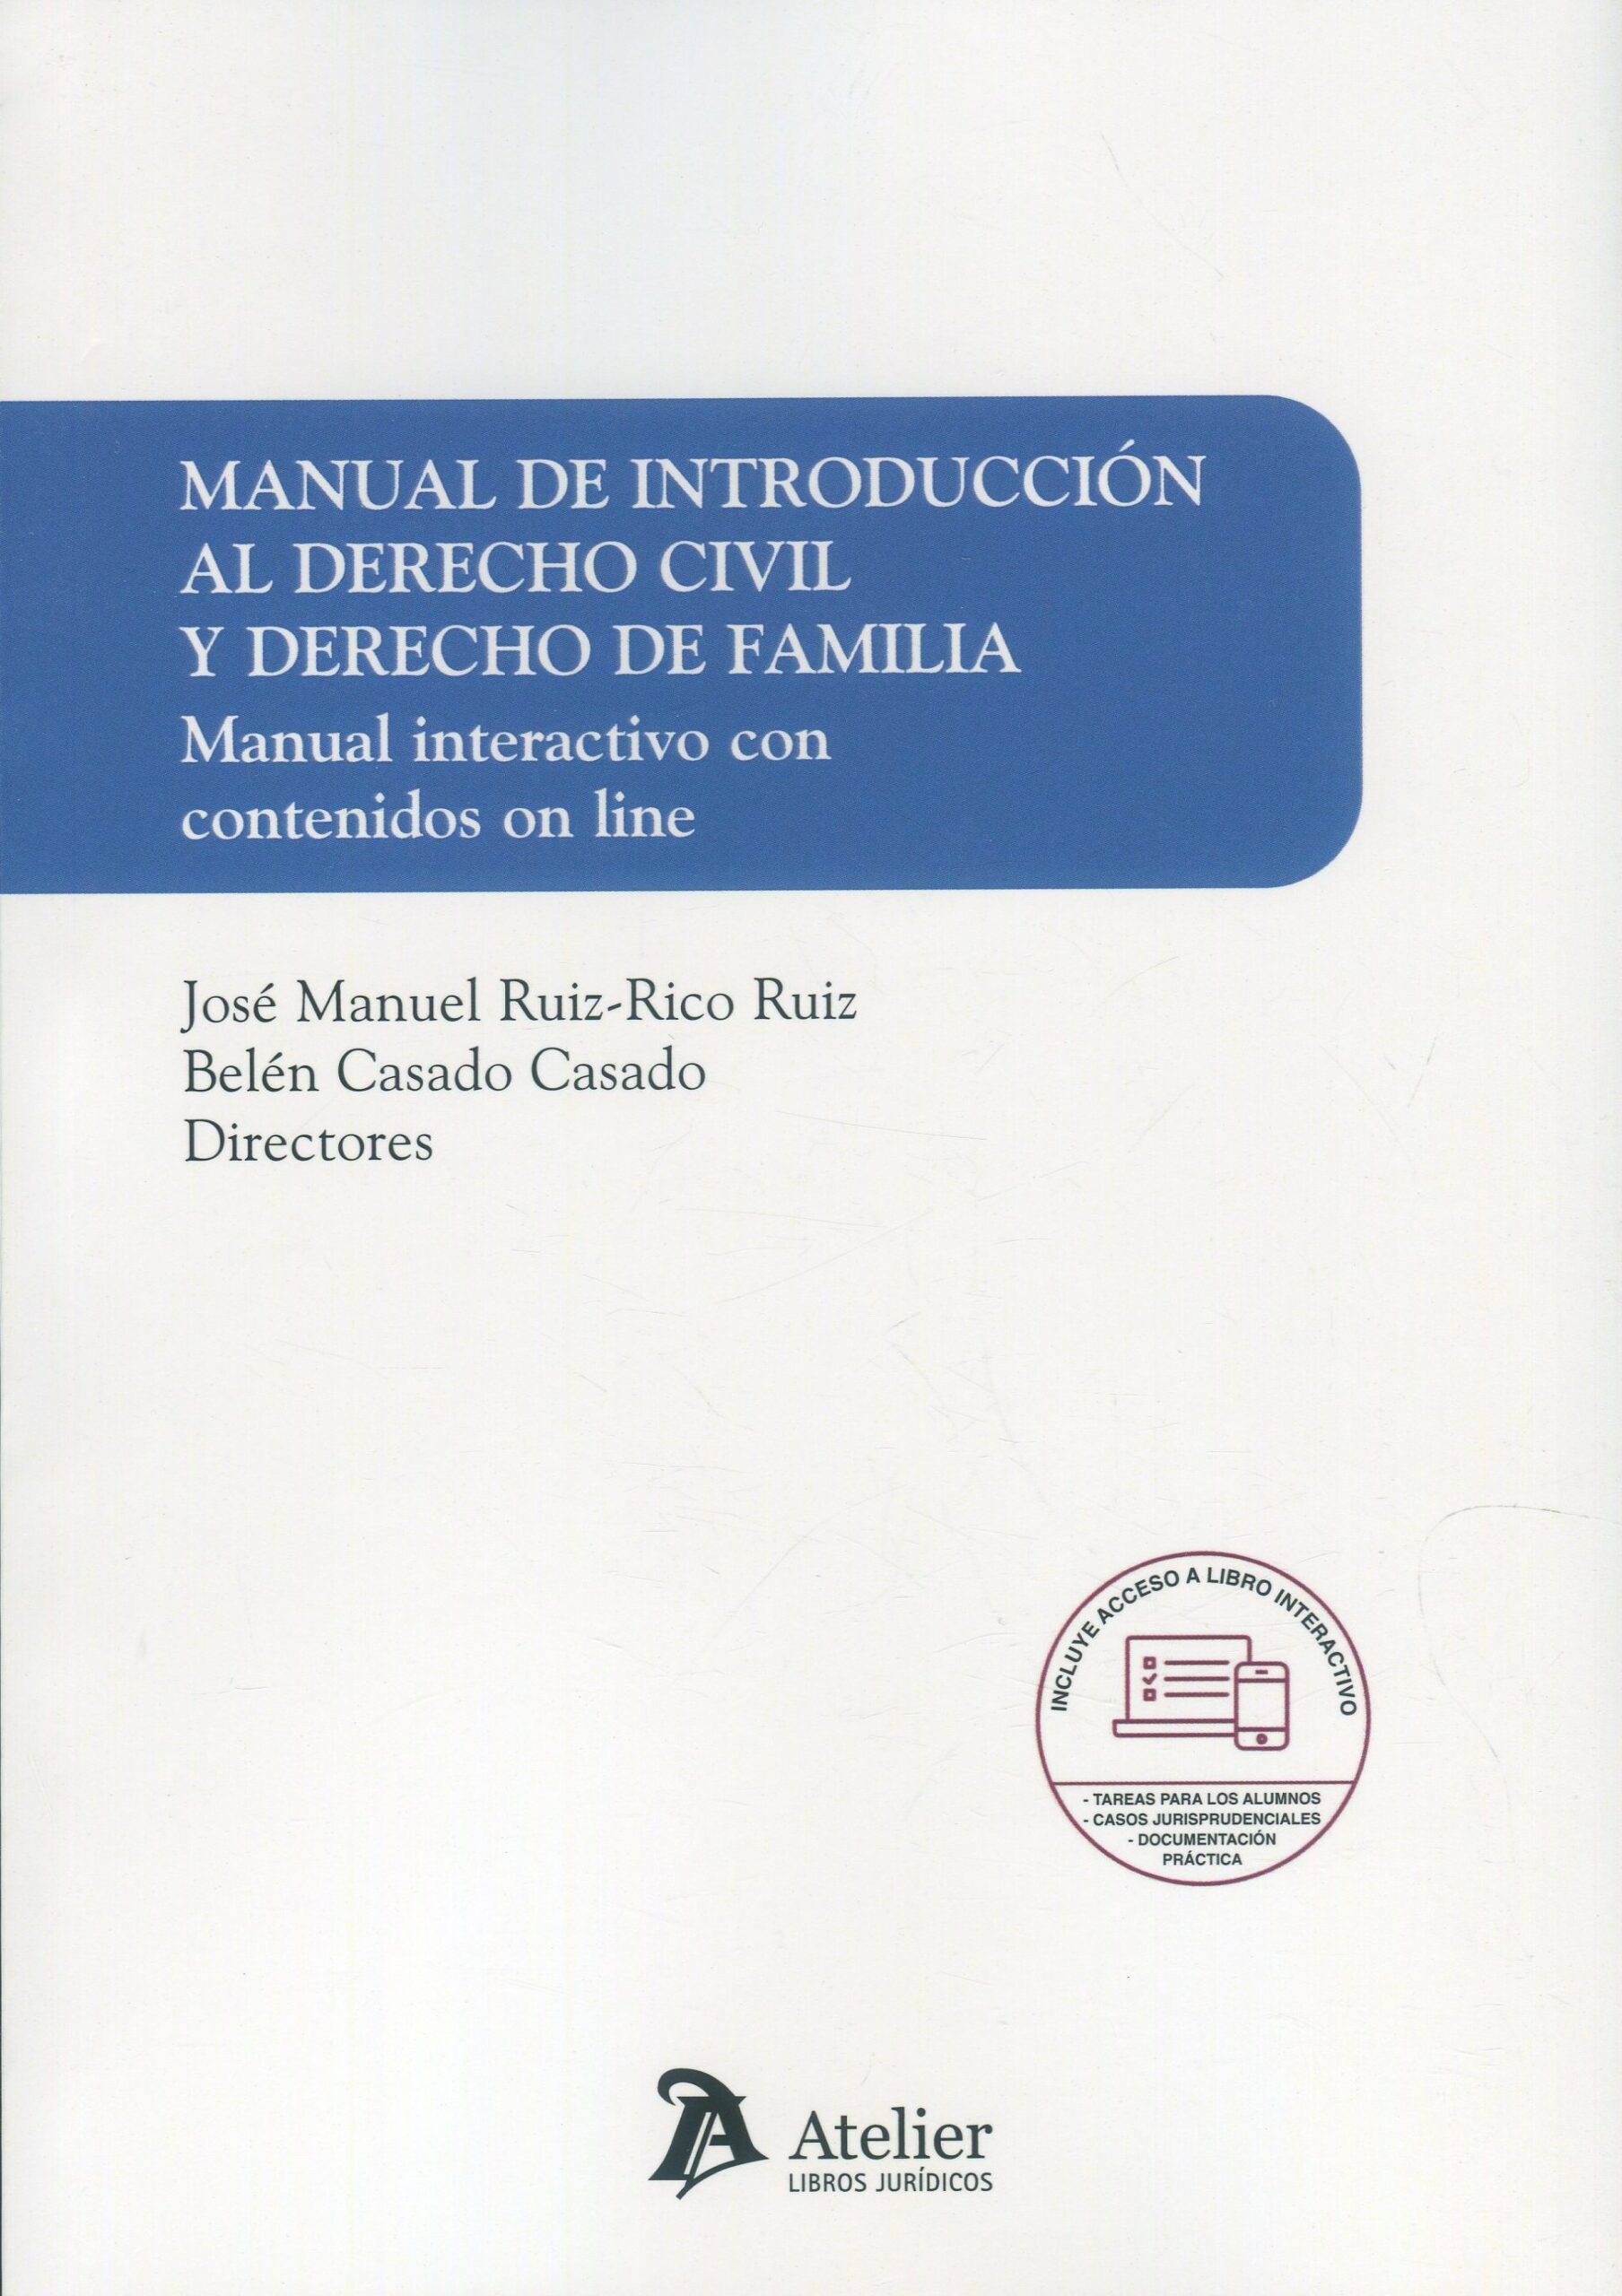 Manual de introducción al derecho civil y derecho de familia